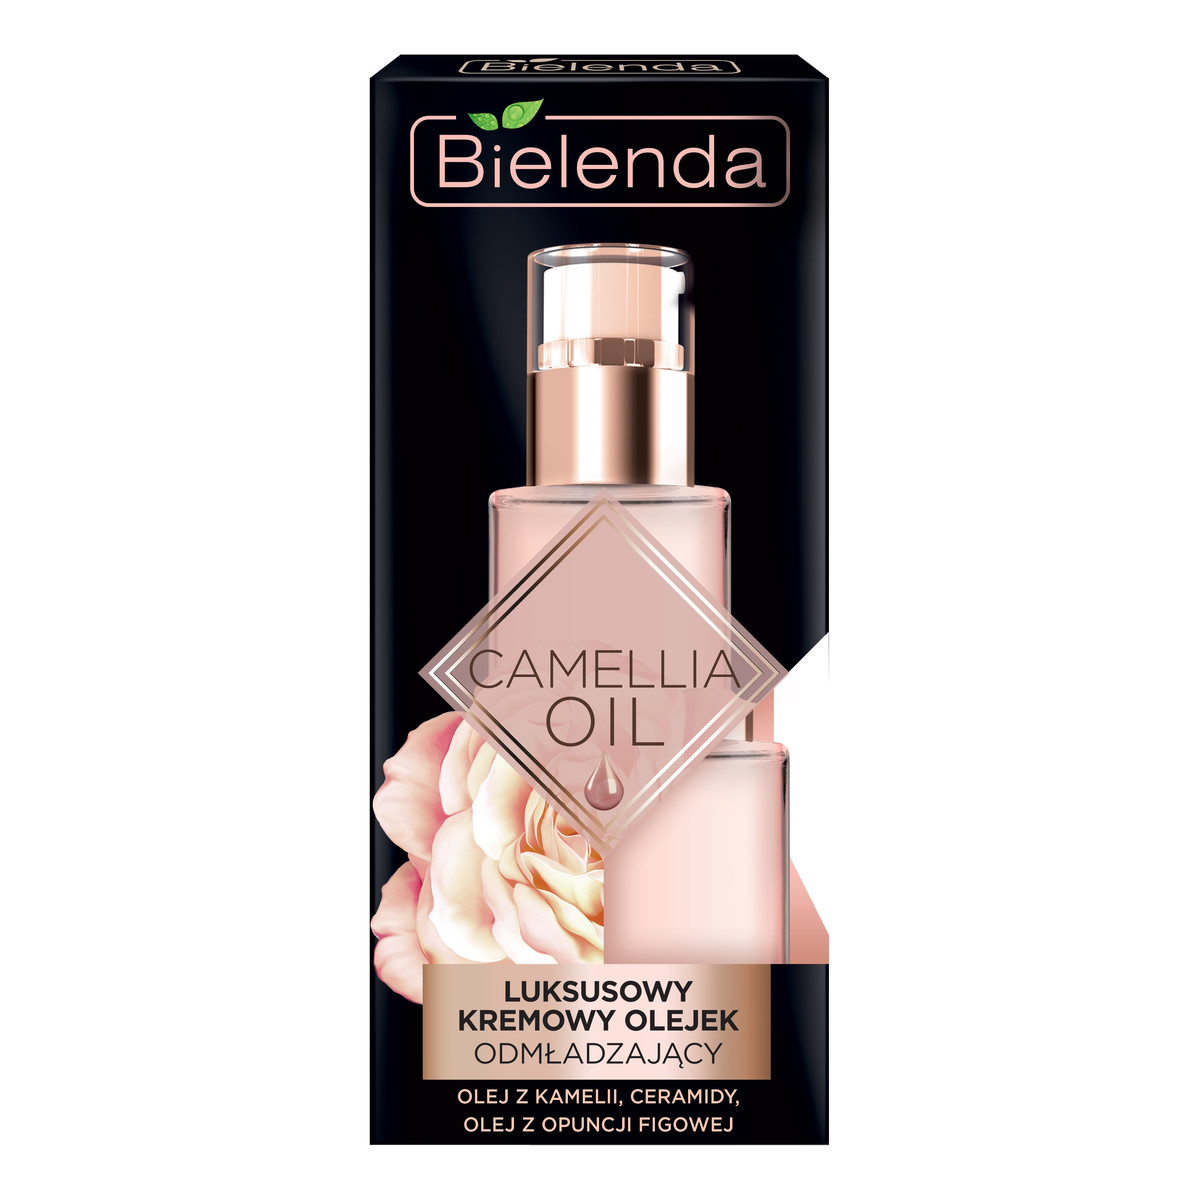 Bielenda Camellia Oil luksusowy kremowy olejek odmładzający do cery dojrzałej 15ml